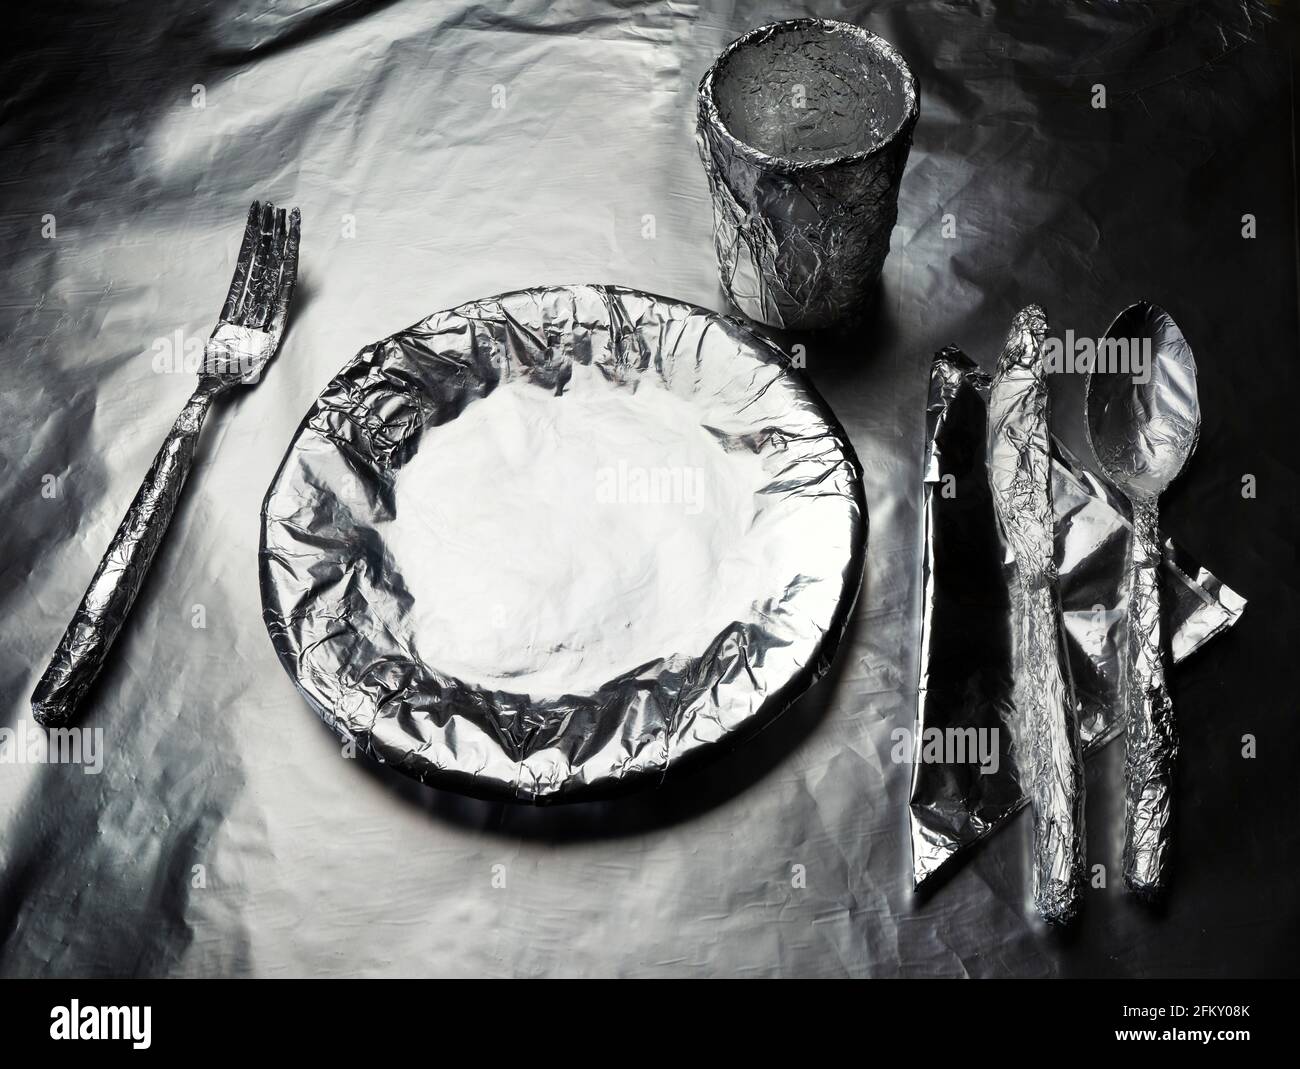 placa de cocina, vajilla y un cristal cubierto con papel de aluminio Foto de stock